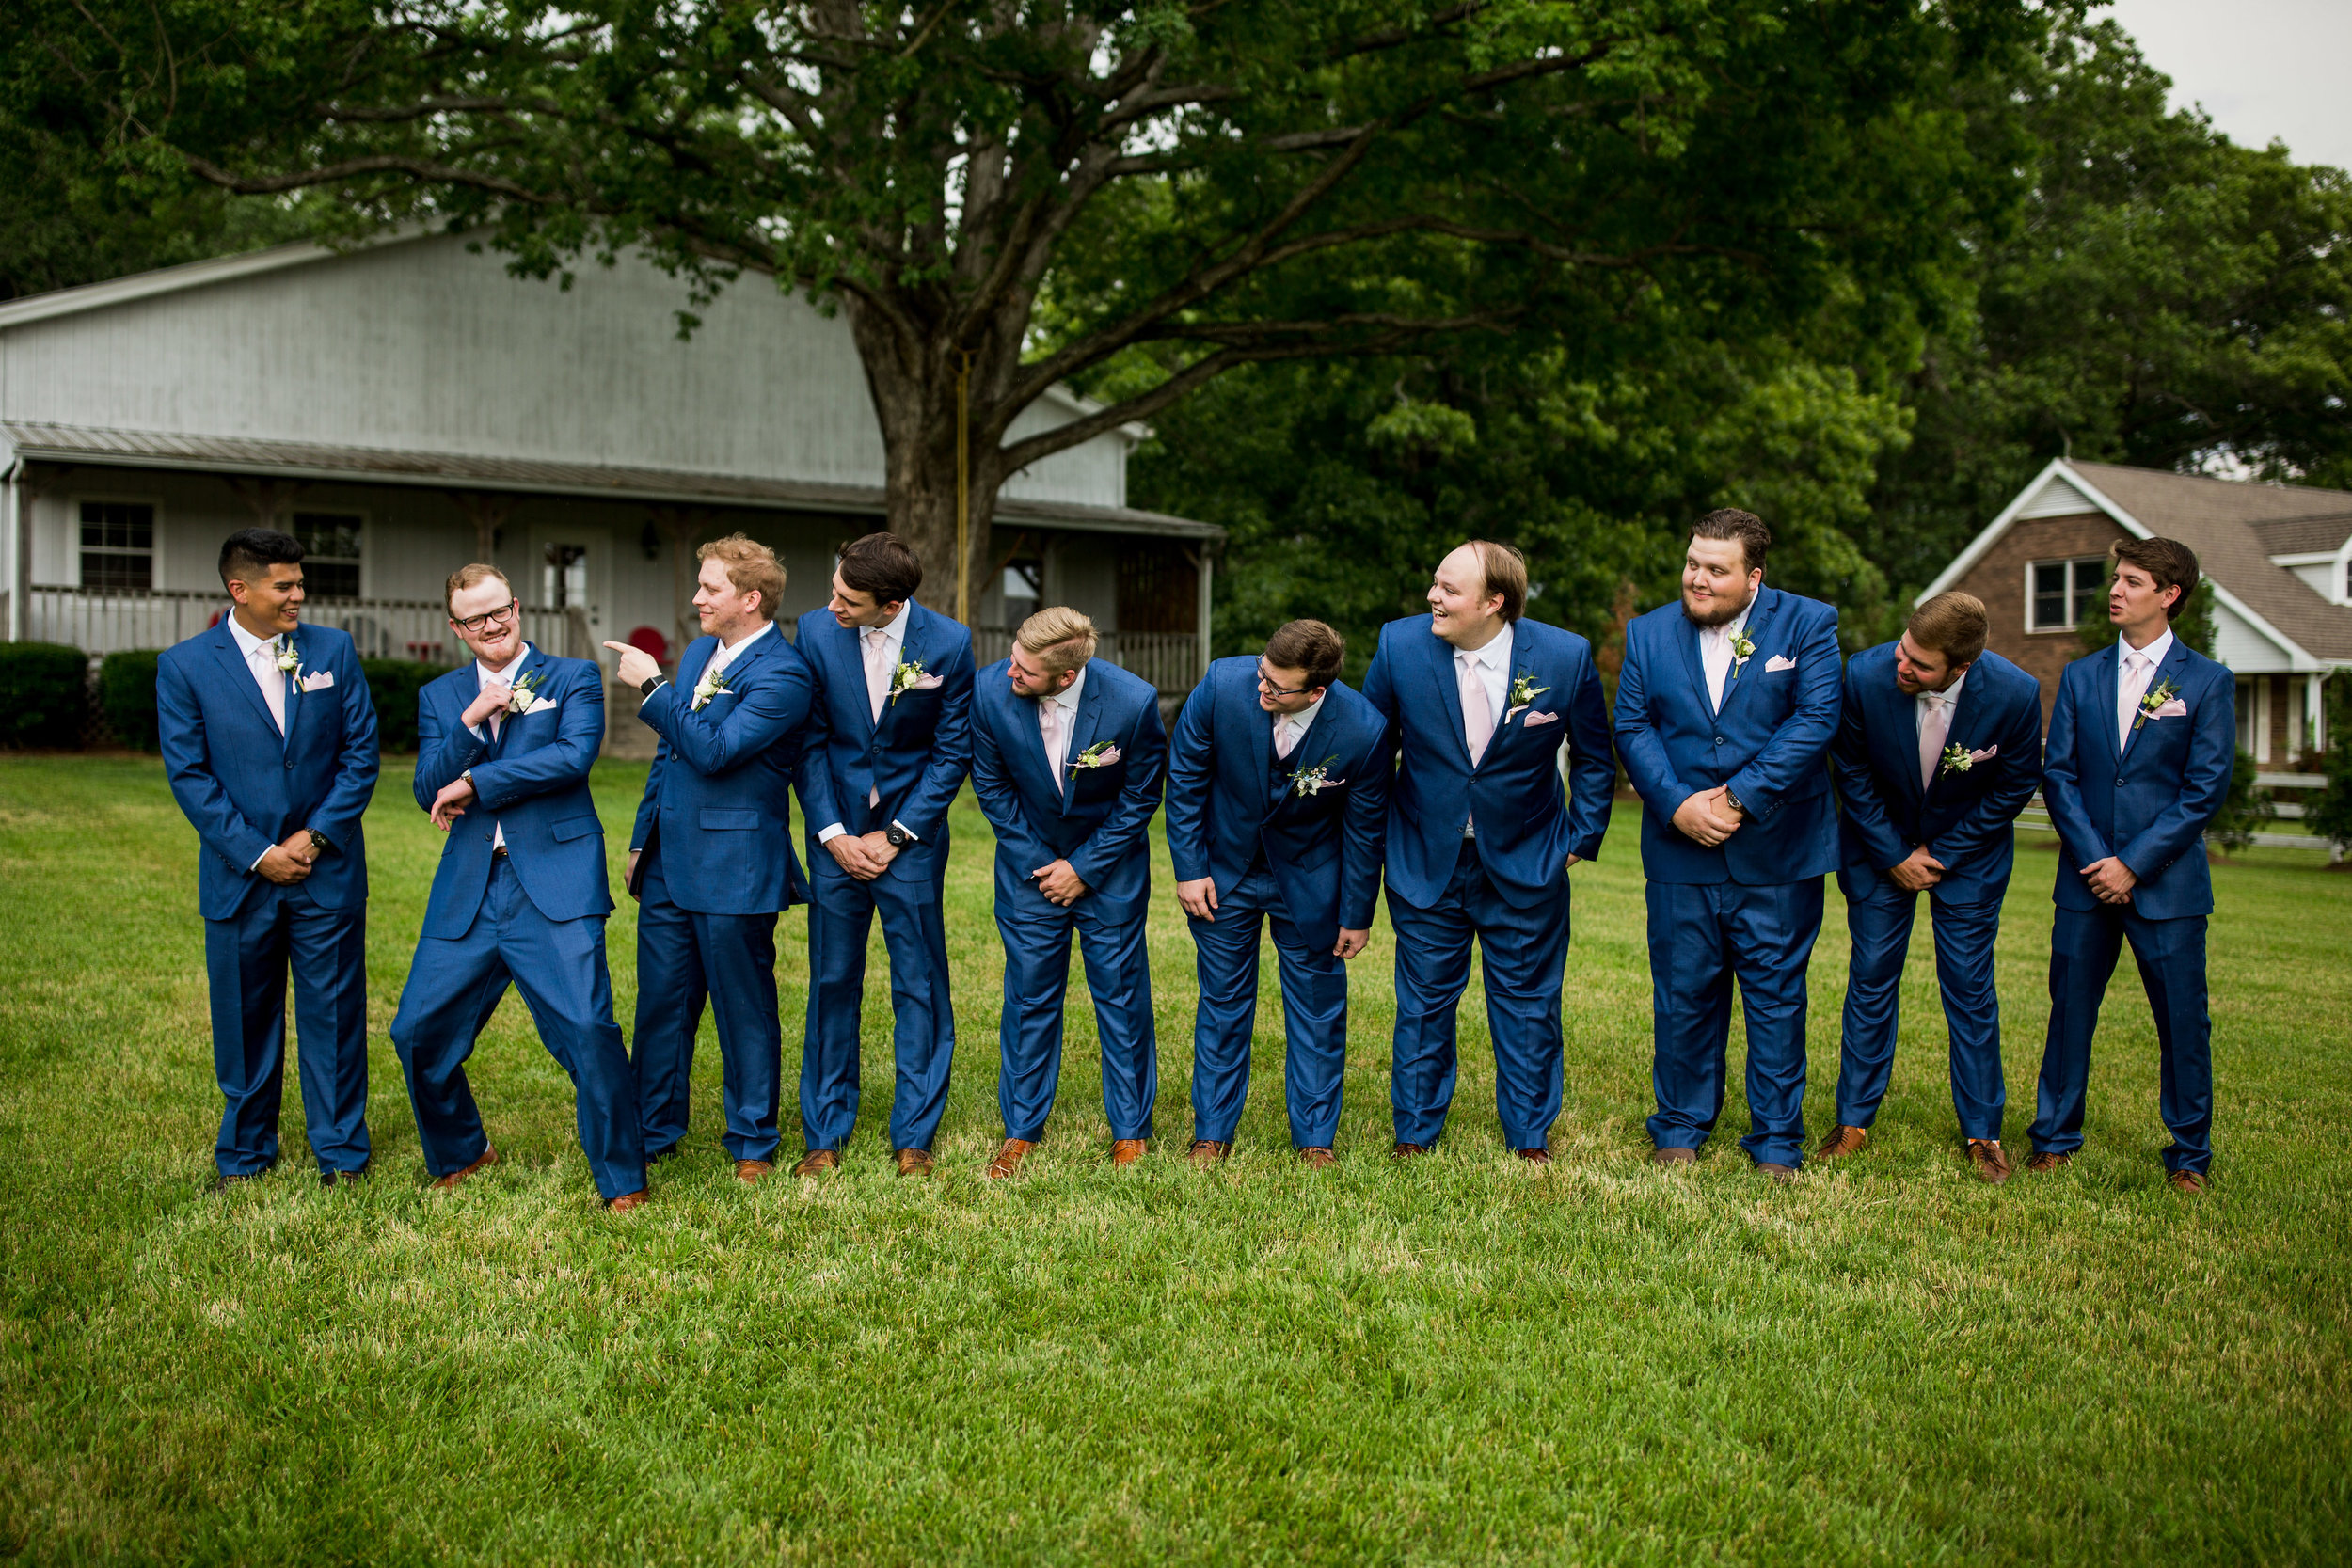 Saddlewood-Farms-Nashville-Wedding-Photographers-180.jpg